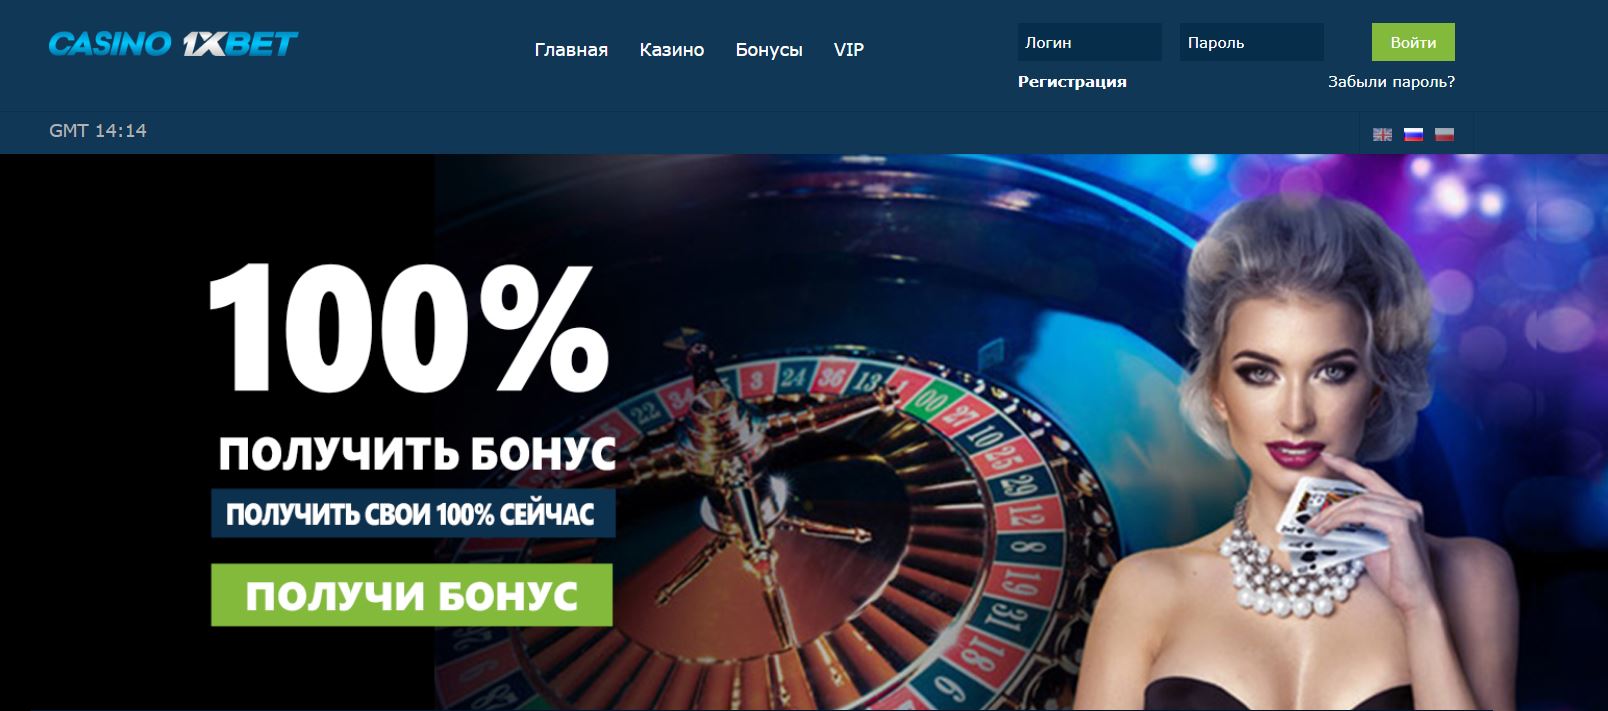 1xbet официальный casino ru